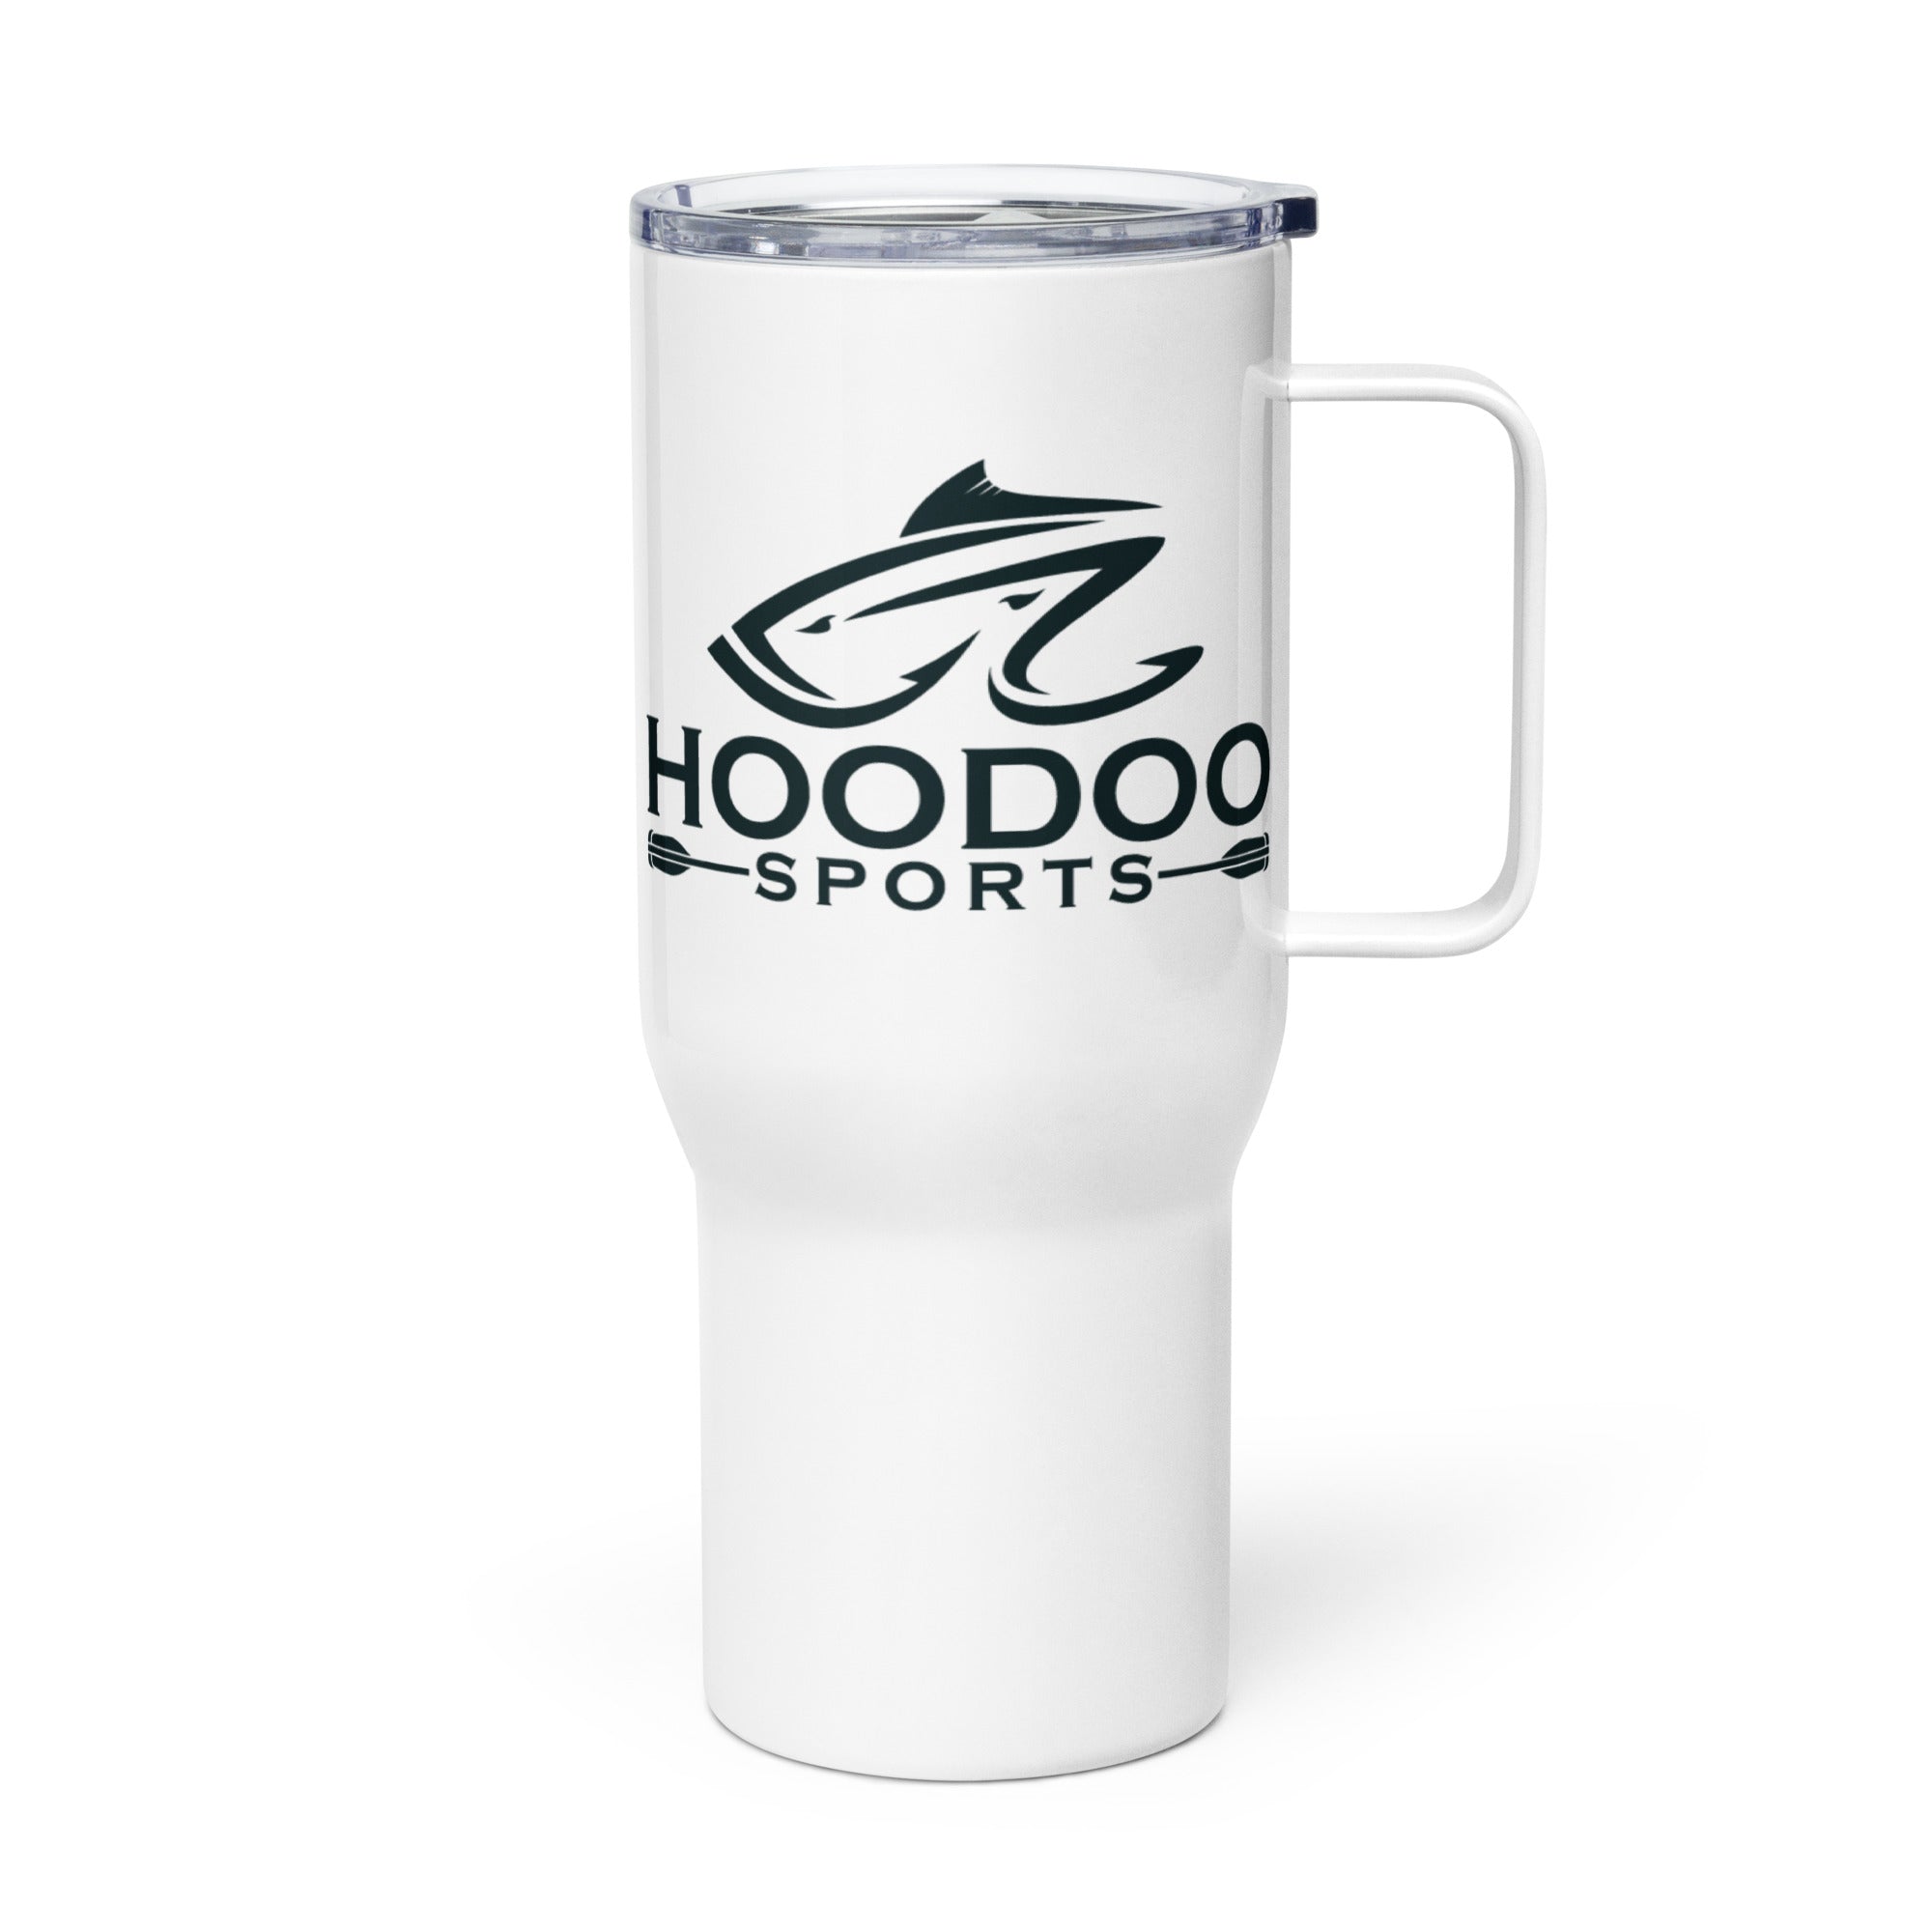 https://www.hoodoosports.com/cdn/shop/files/travel-mug-with-a-handle-white-25-oz-left-64877d7f2d0e0.jpg?v=1686601095&width=2000